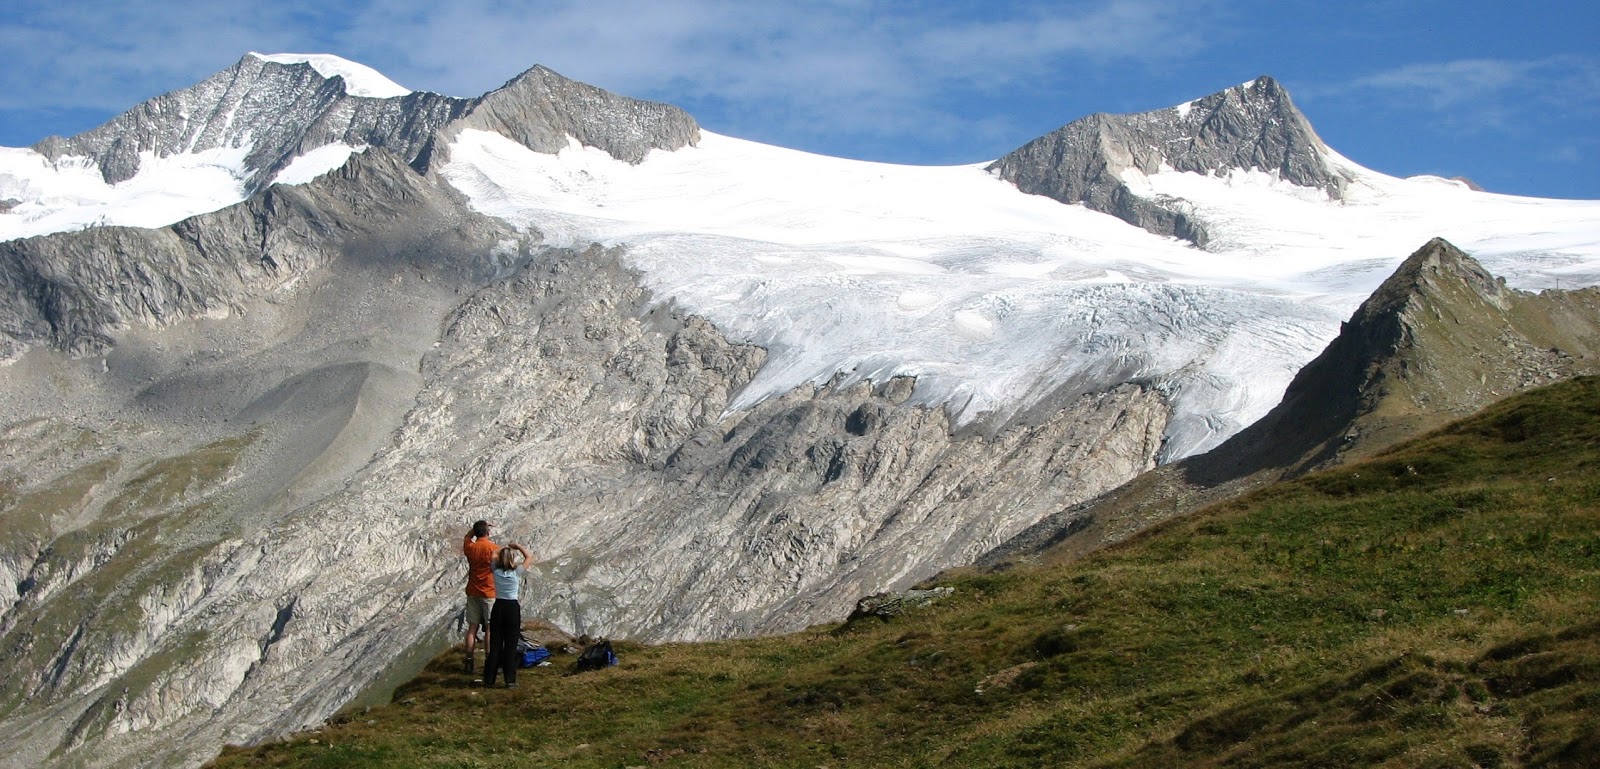 25 Kata Kata Menikmati Alam Yang Menginspirasi Basecamp Pendaki